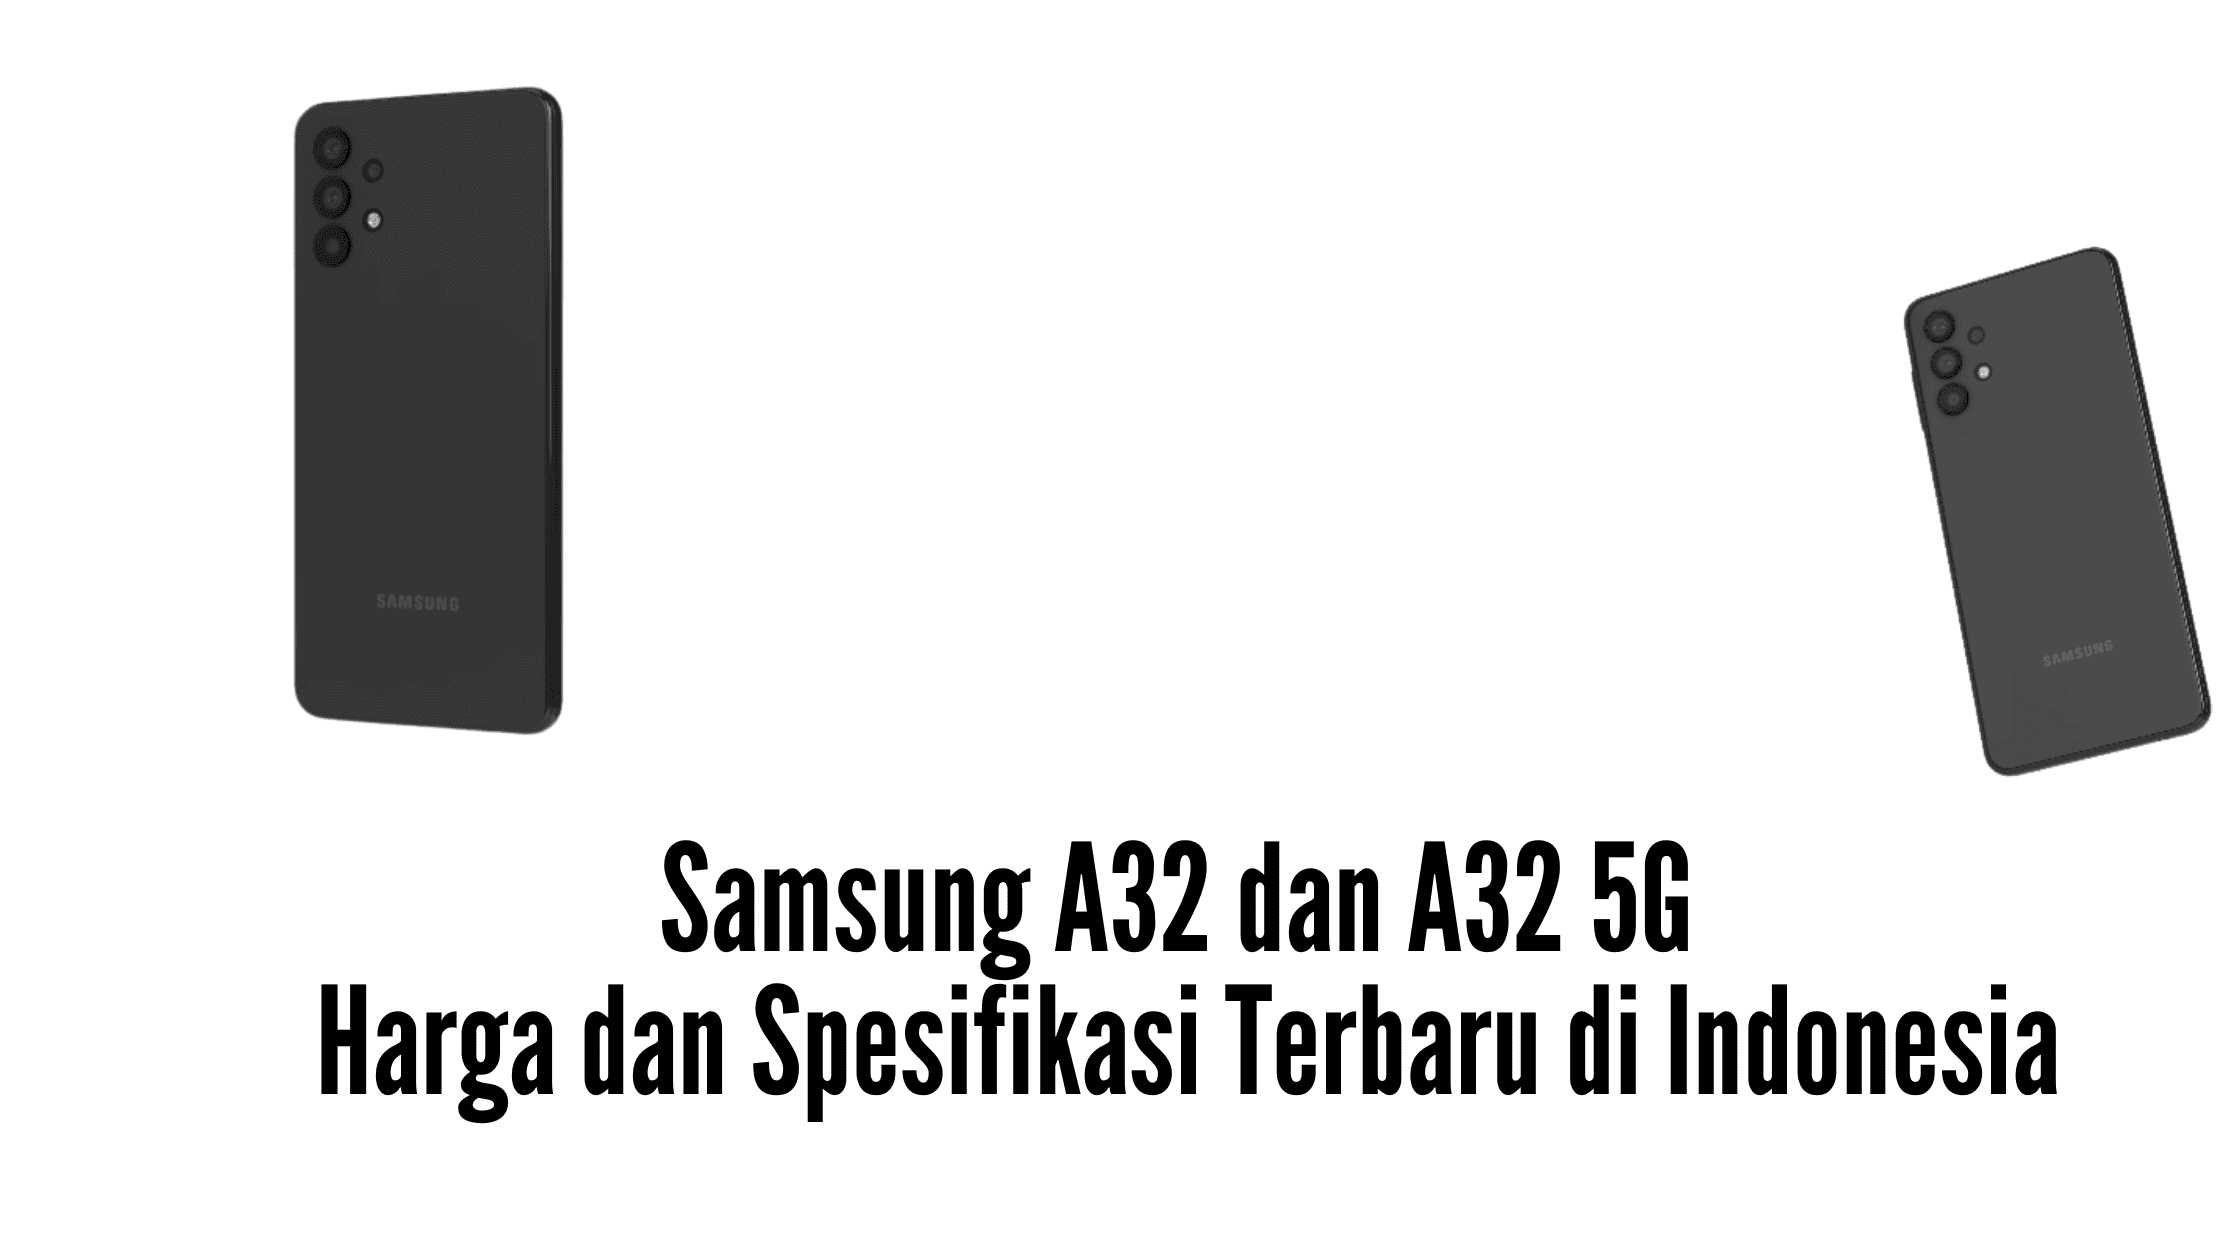 Samsung A32 dan A32 5G Harga dan Spesifikasi Terbaru di Indonesia